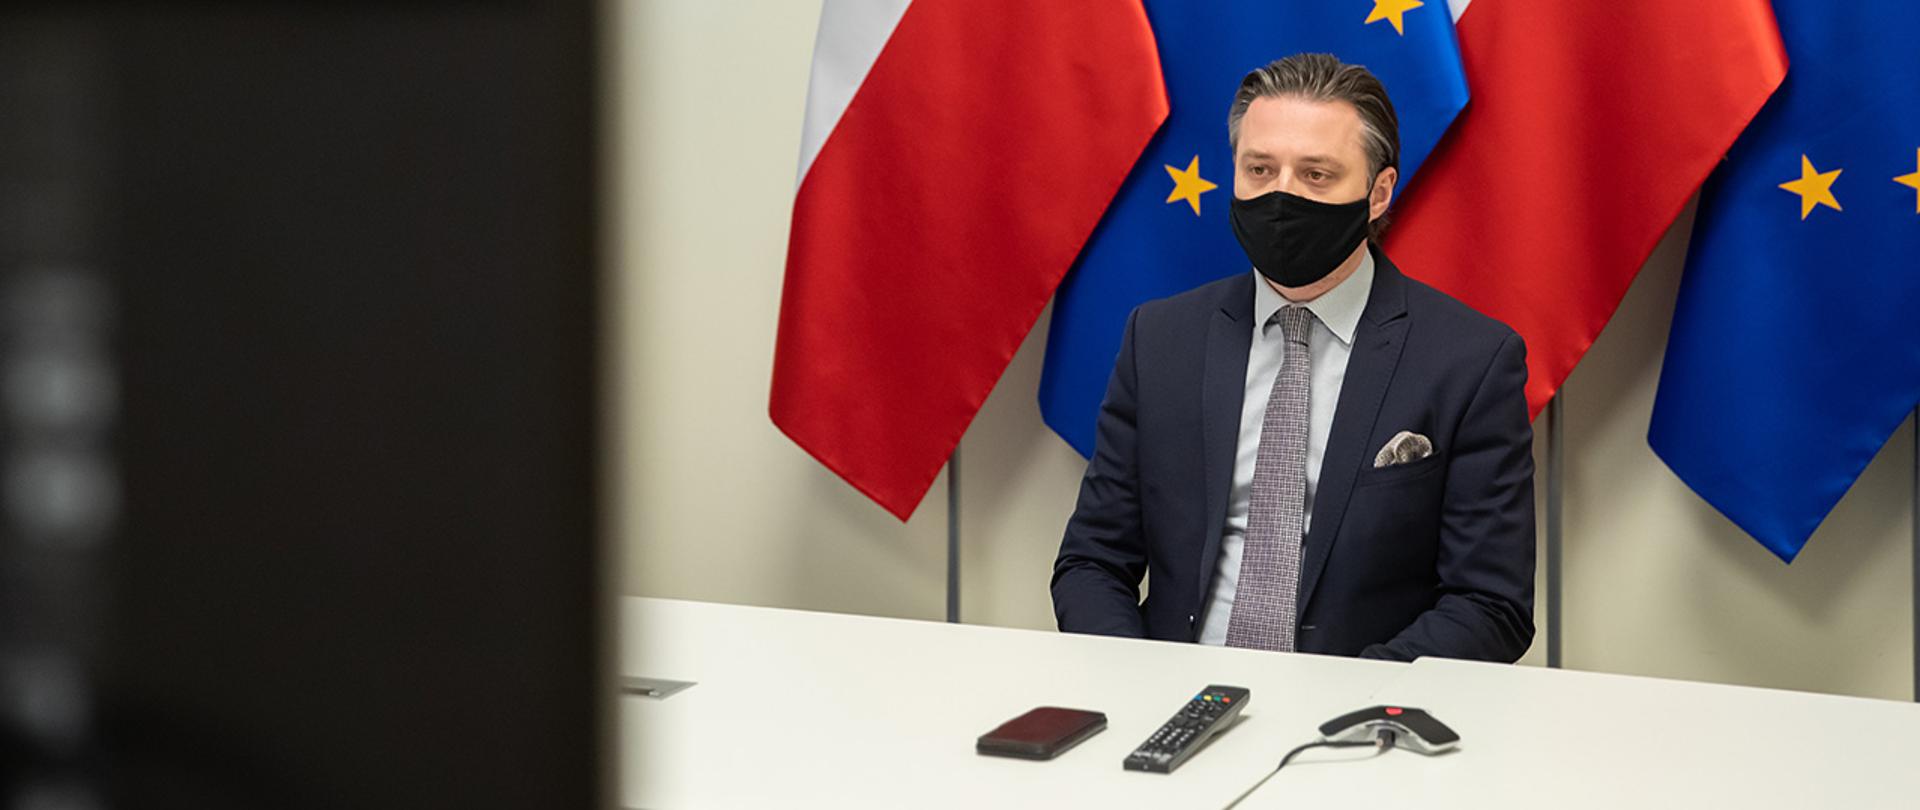 Na zdjęciu widać wiceministra Bartosza Grodeckiego siedzącego za stołem na tle flag Polski i UE wpatrzonego w ekran.